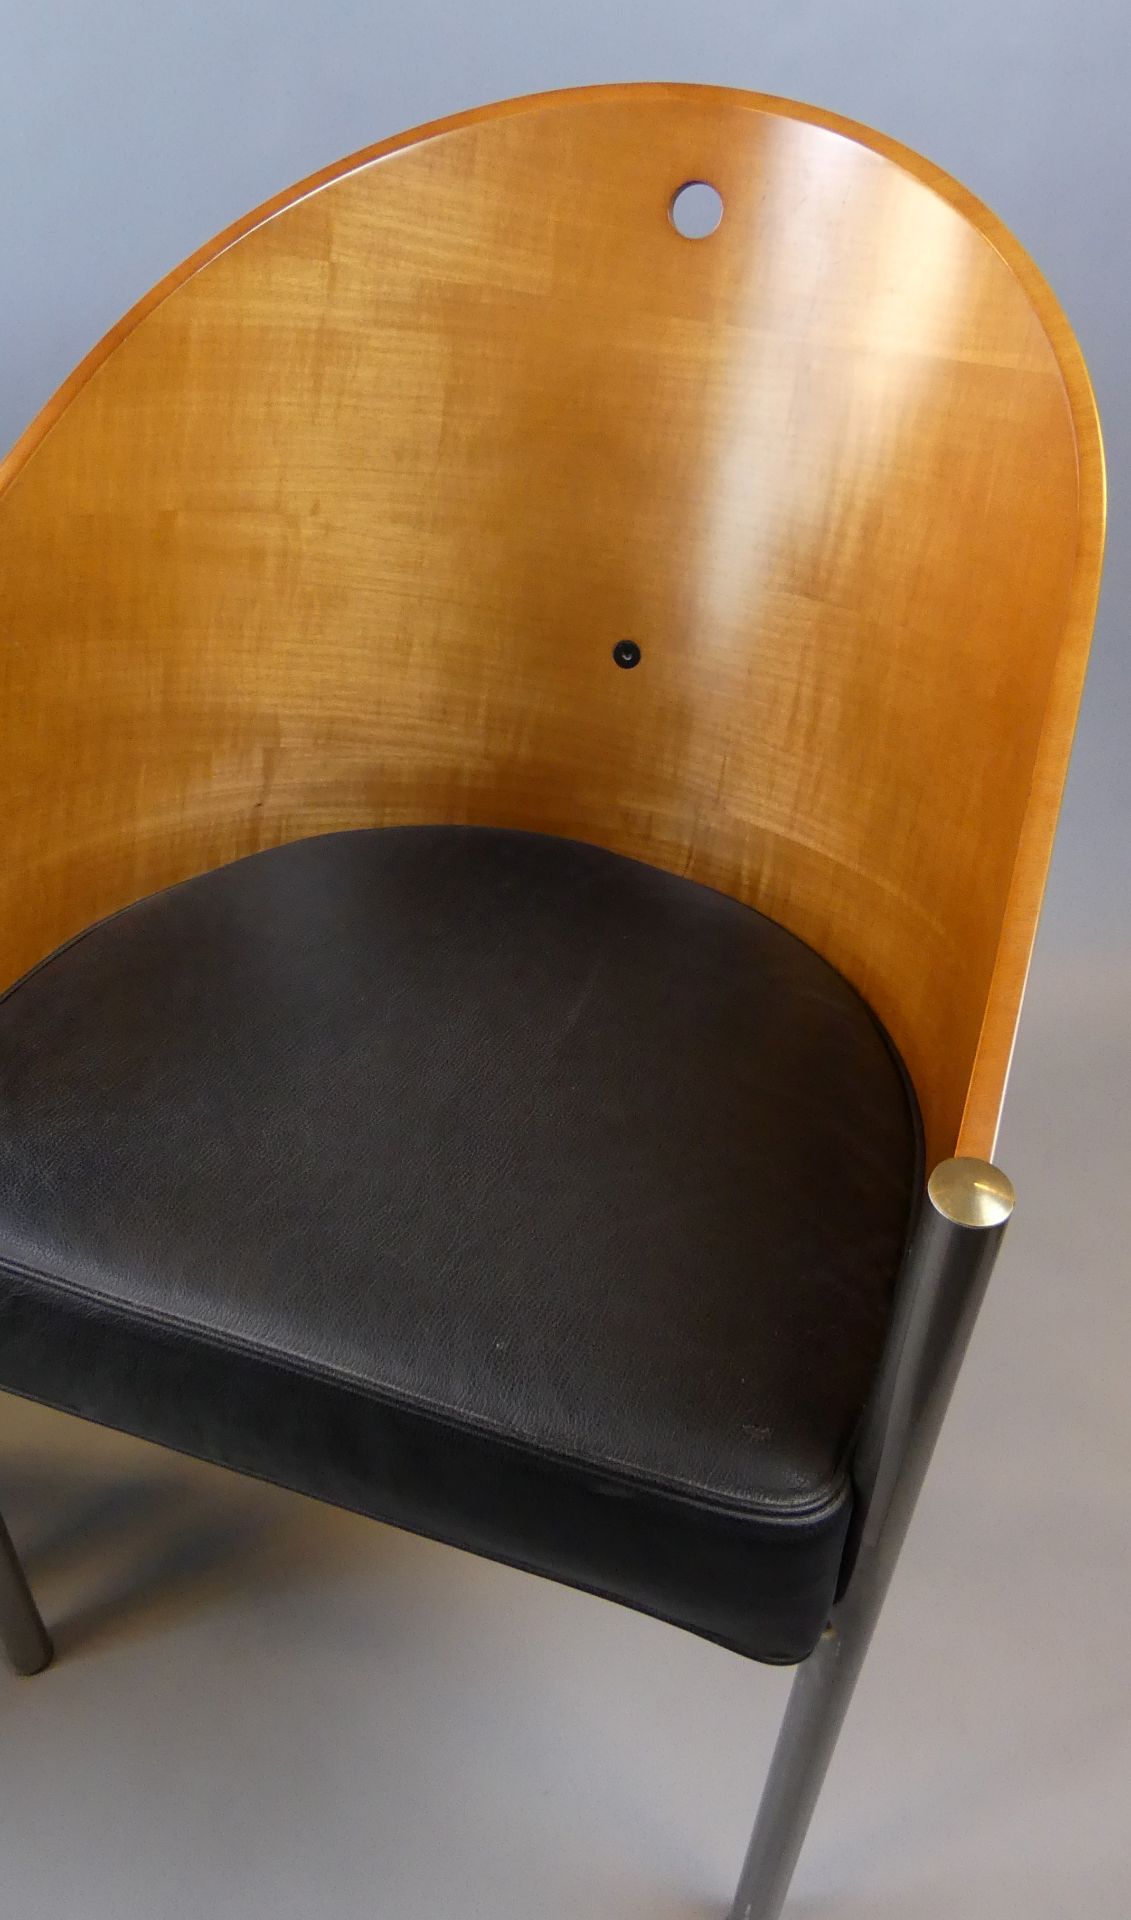 Paar Philippe Starck Stühle, "Costes-Chair" für Driade, 90er Jahre, - Bild 3 aus 5